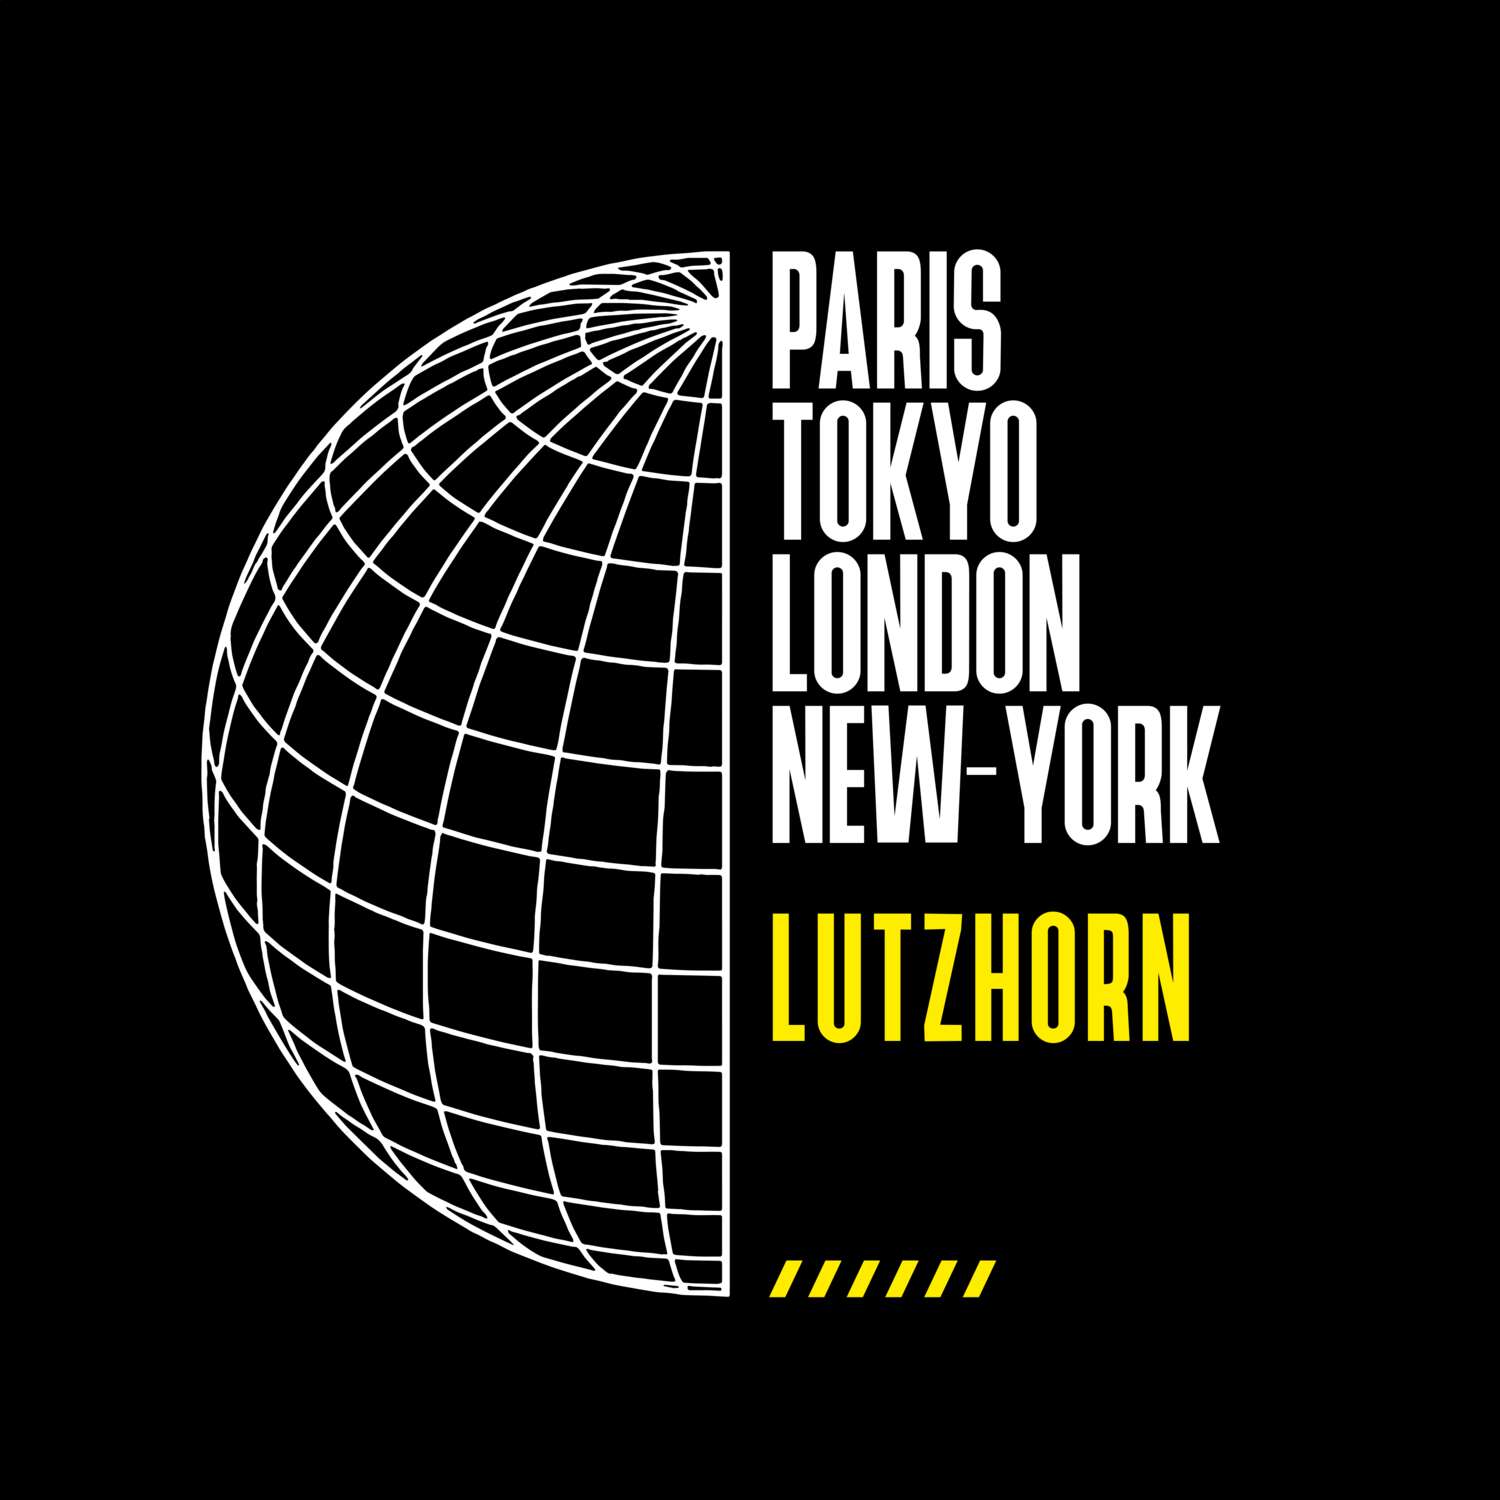 Lutzhorn T-Shirt »Paris Tokyo London«